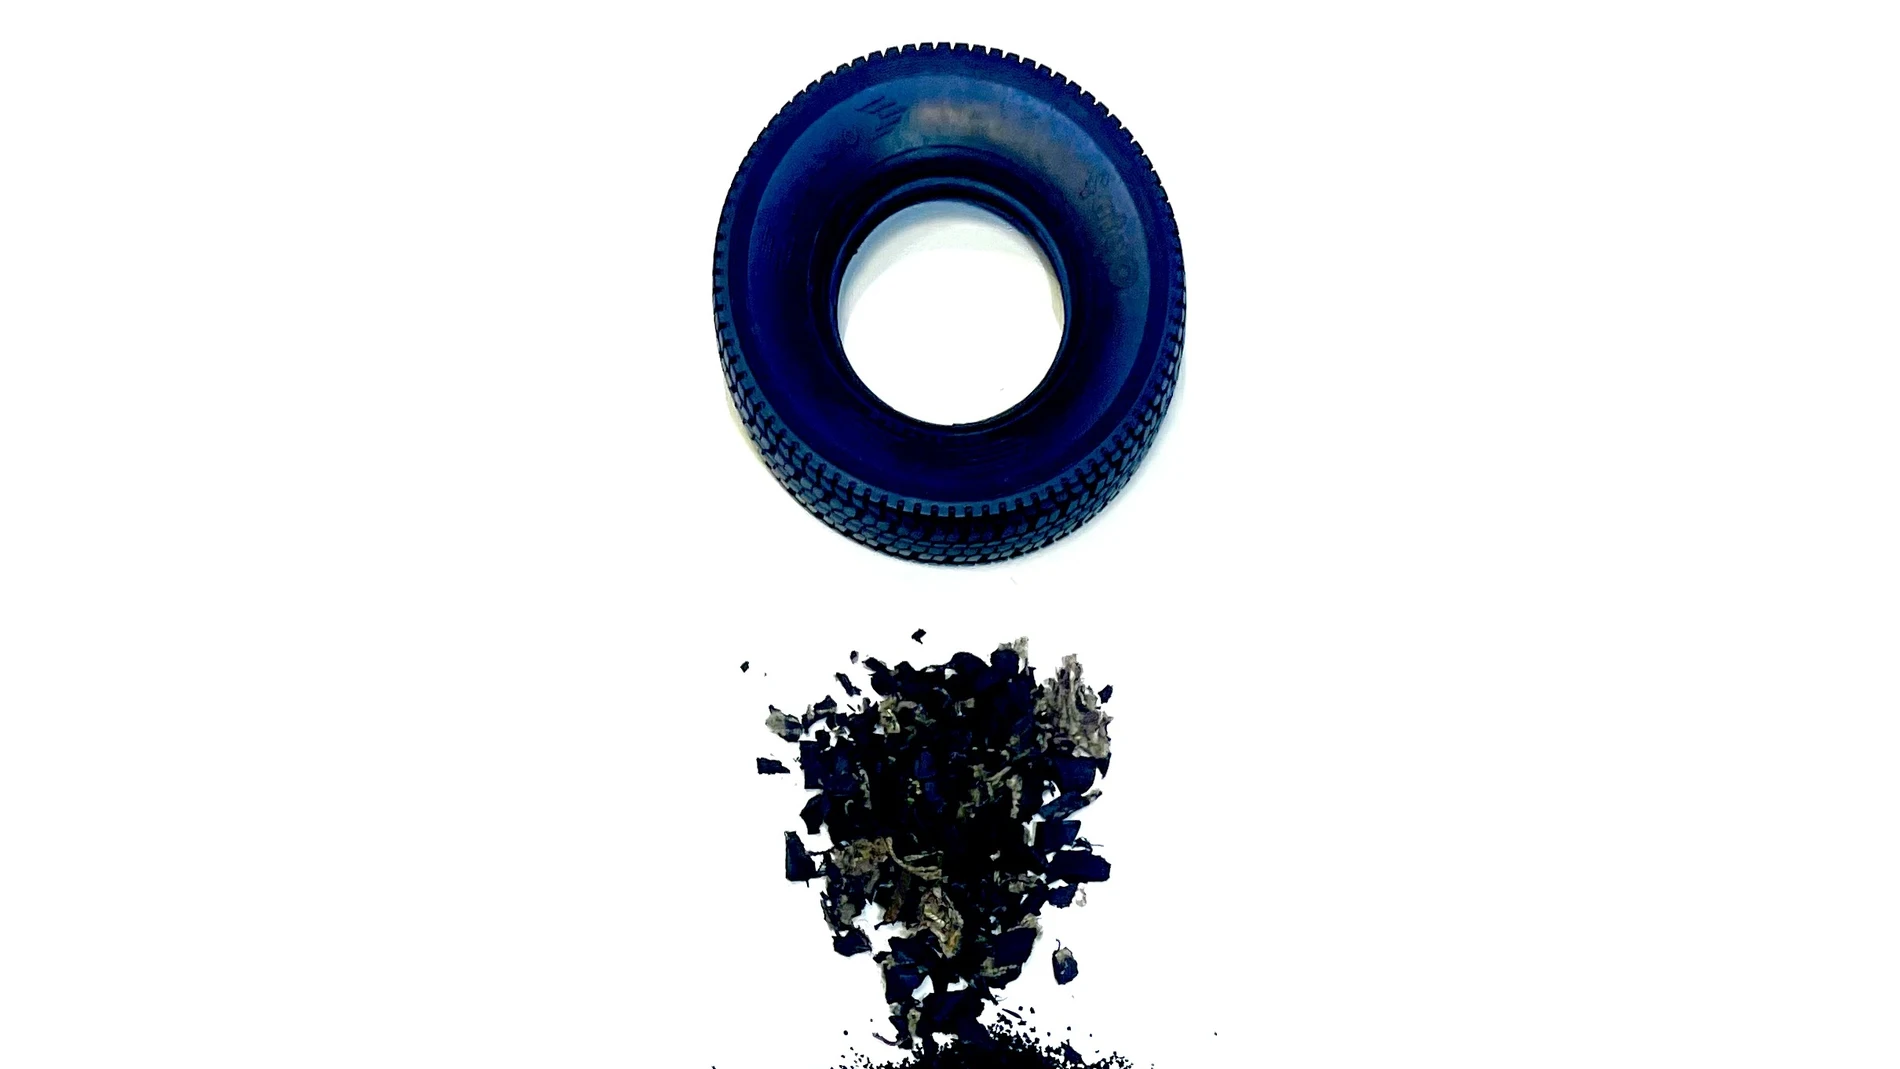 Imagen que ilustra el proceso de reciclaje y reutilización de los neumáticos